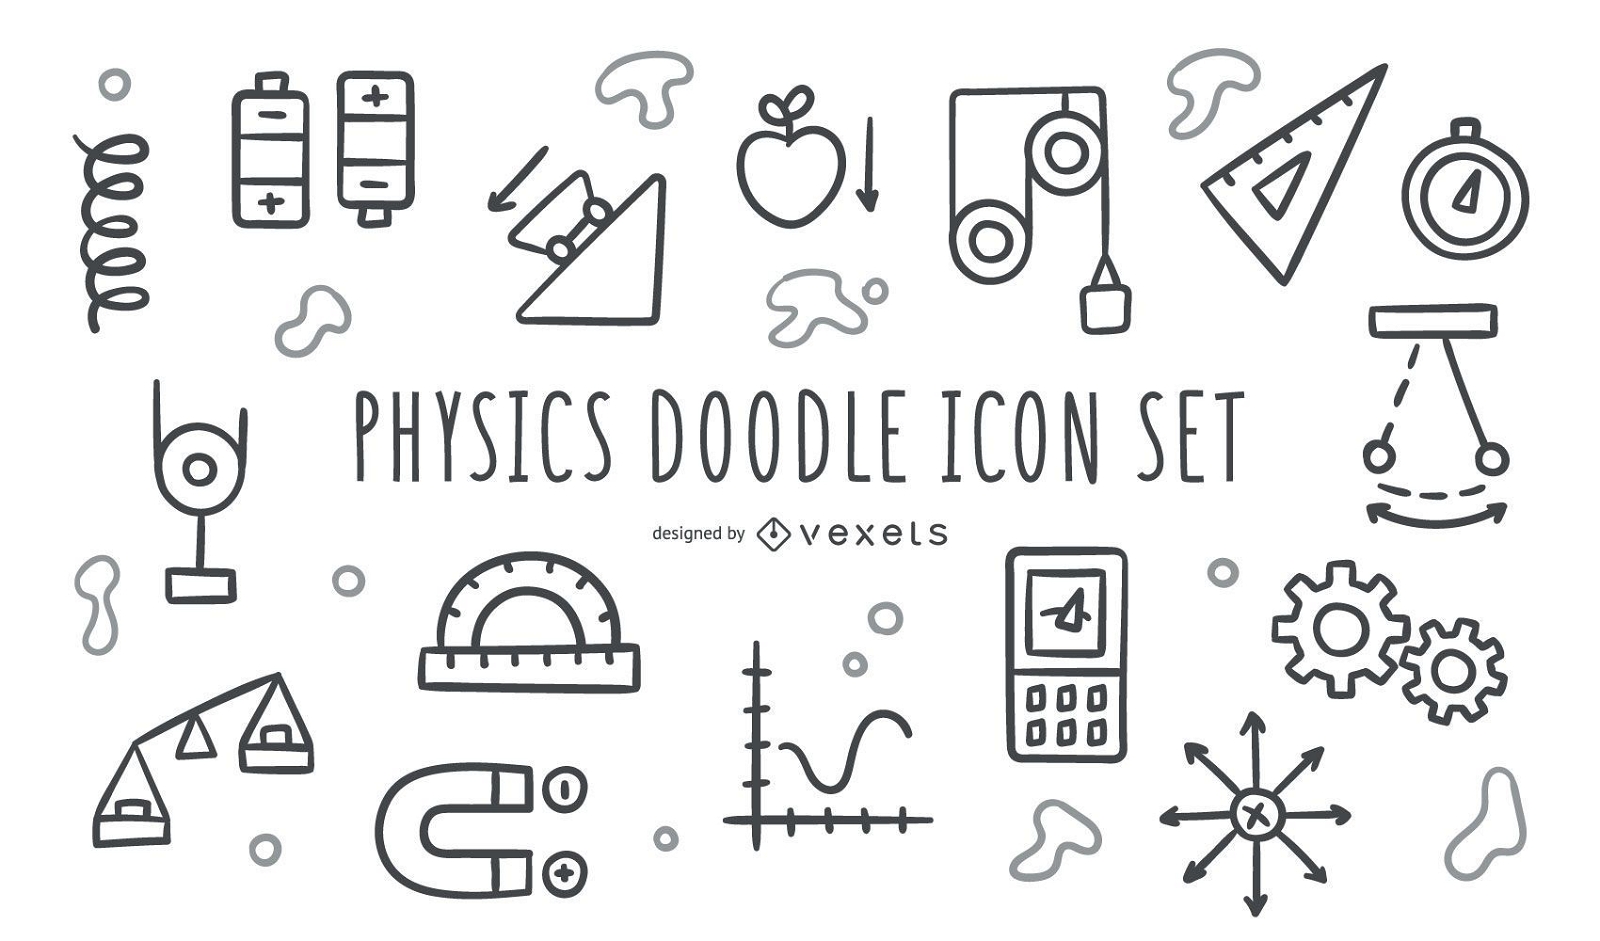 Physics doodle icon set